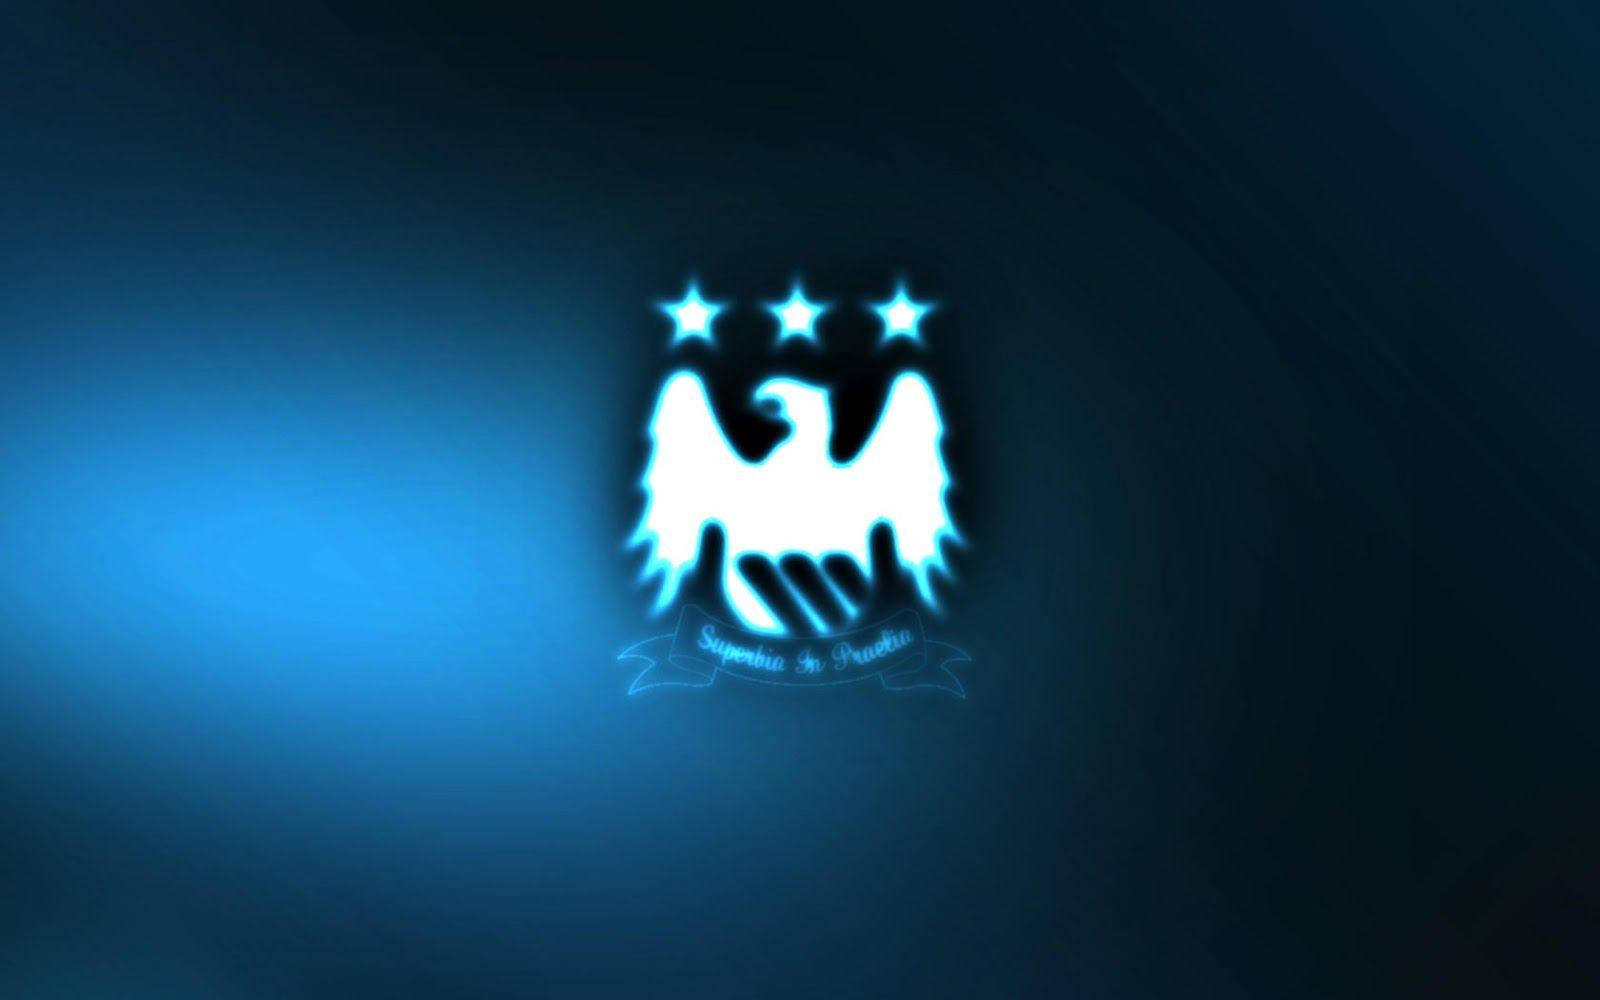 Weißesmanchester City Fc-logo Über Blauem Hintergrund. Wallpaper